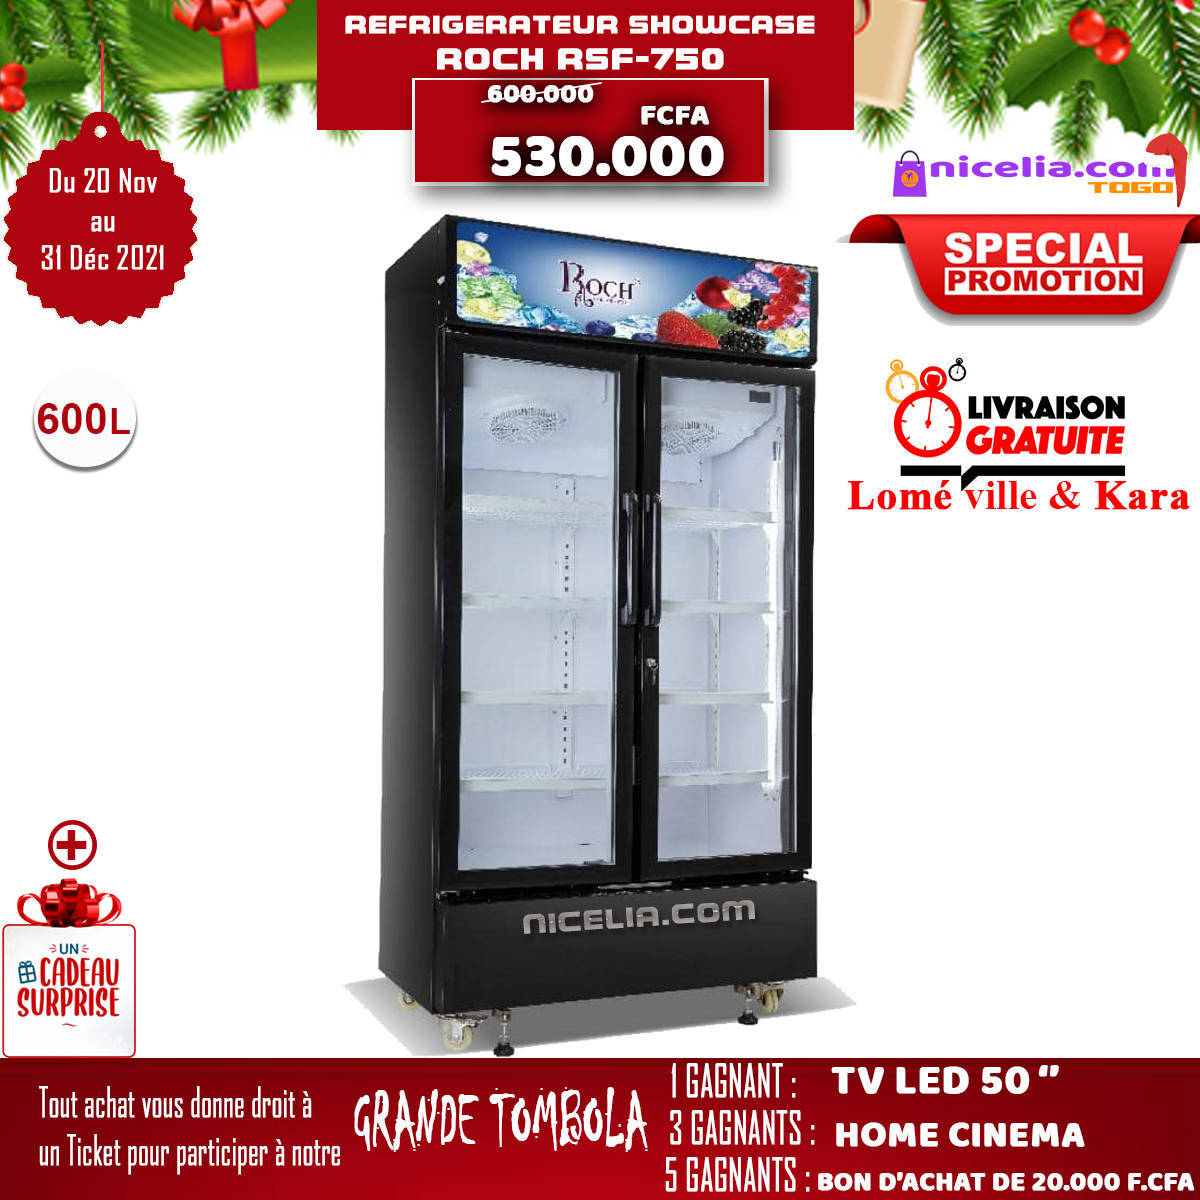 Réfrigérateur showcase roch RSF 750